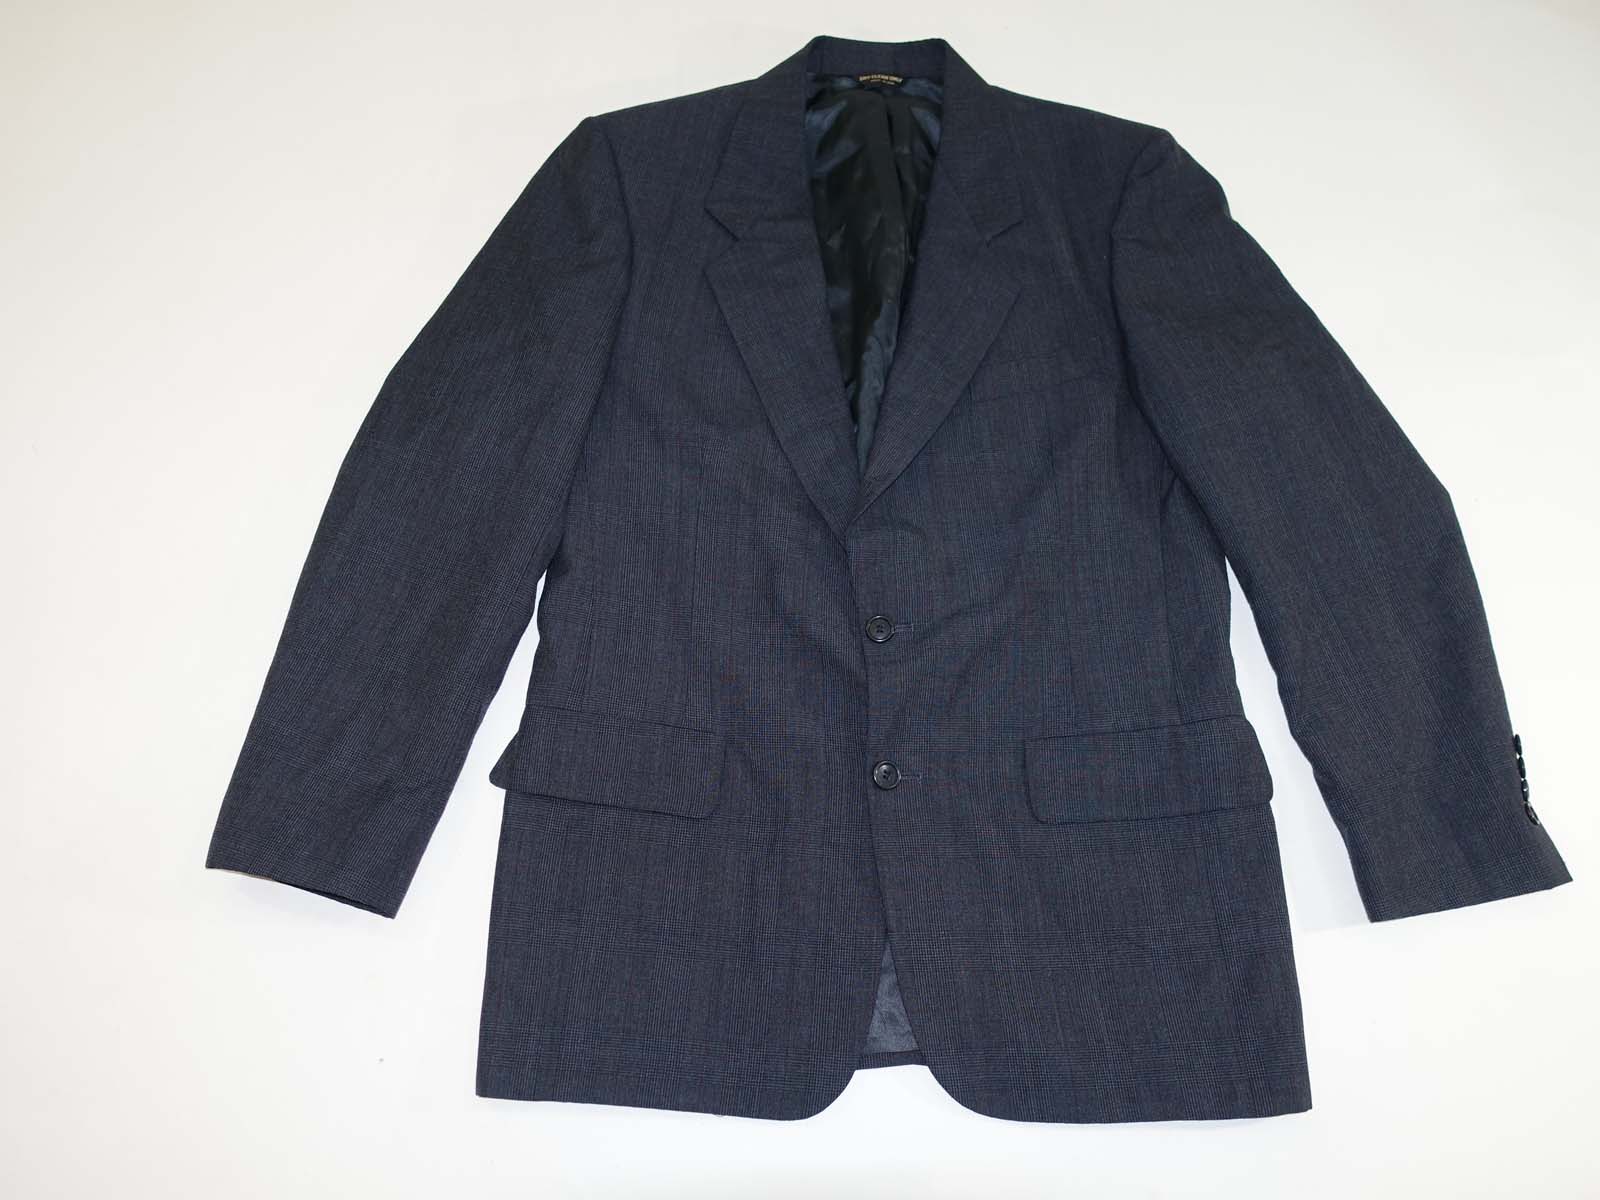 Bill Blass Men's Sport Coat Size 40 Regular Navy Blue Plaid 100% Wool ...